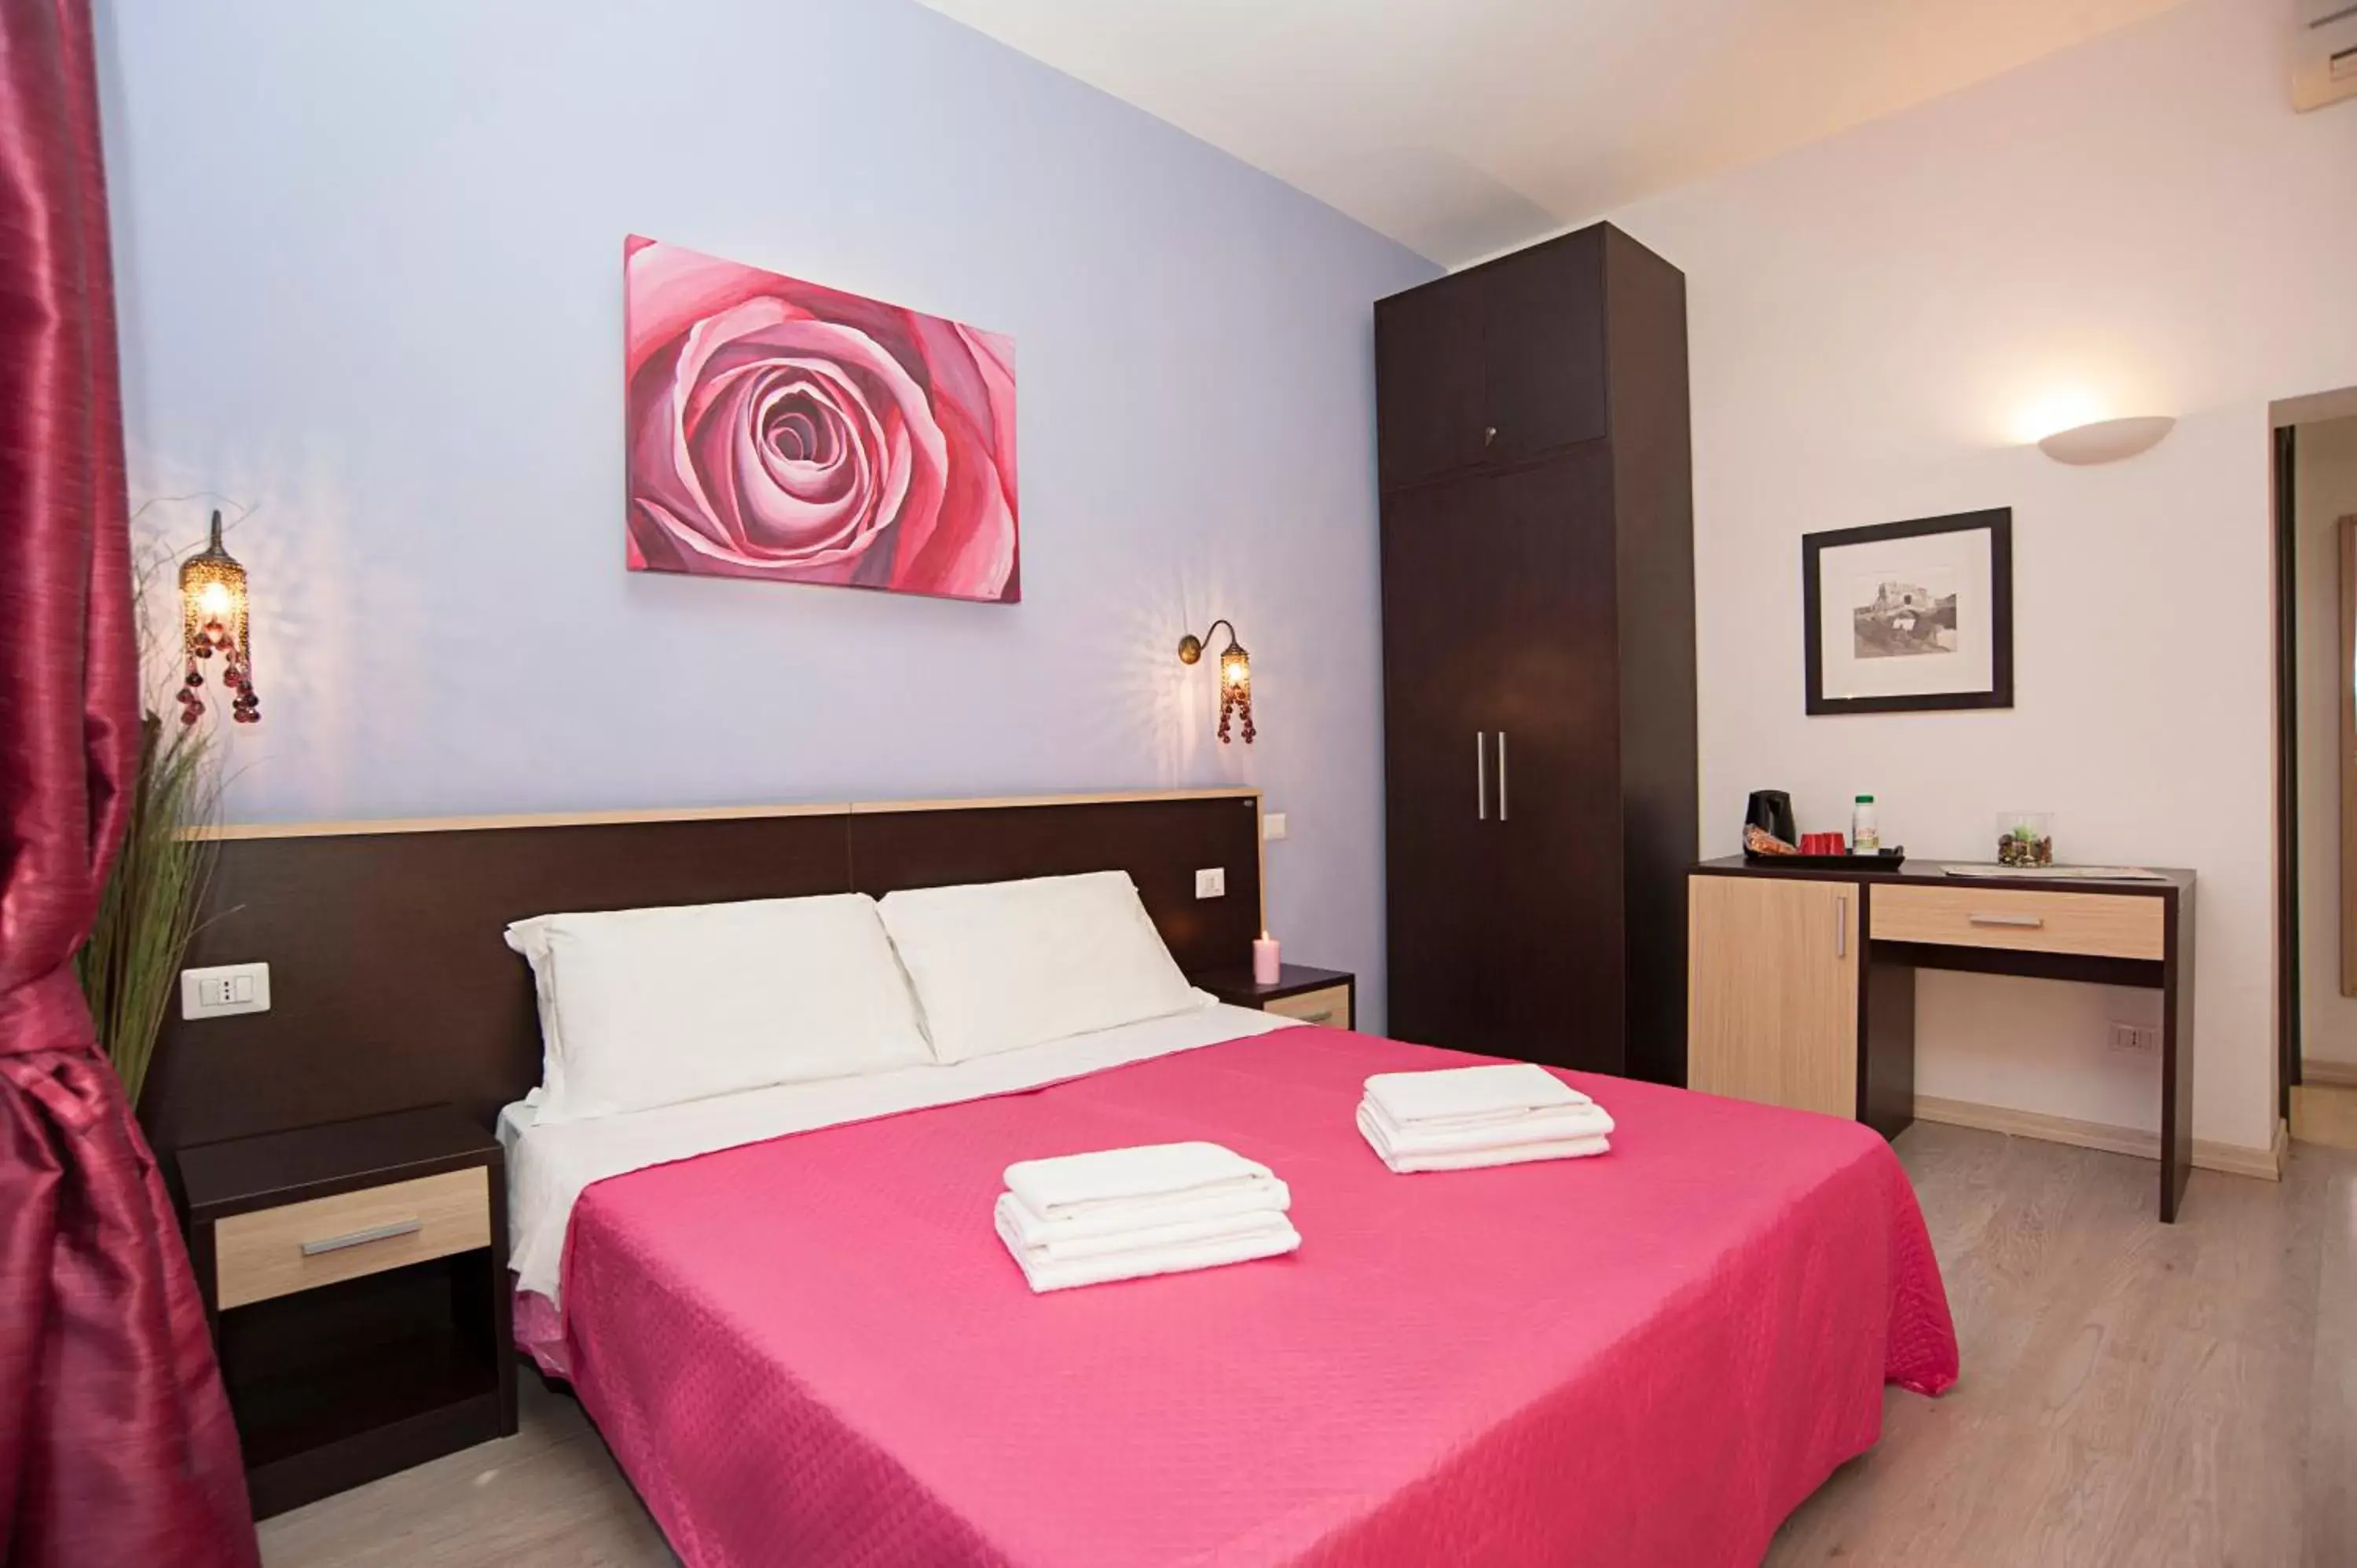 Bedroom, Bed in Flowerome